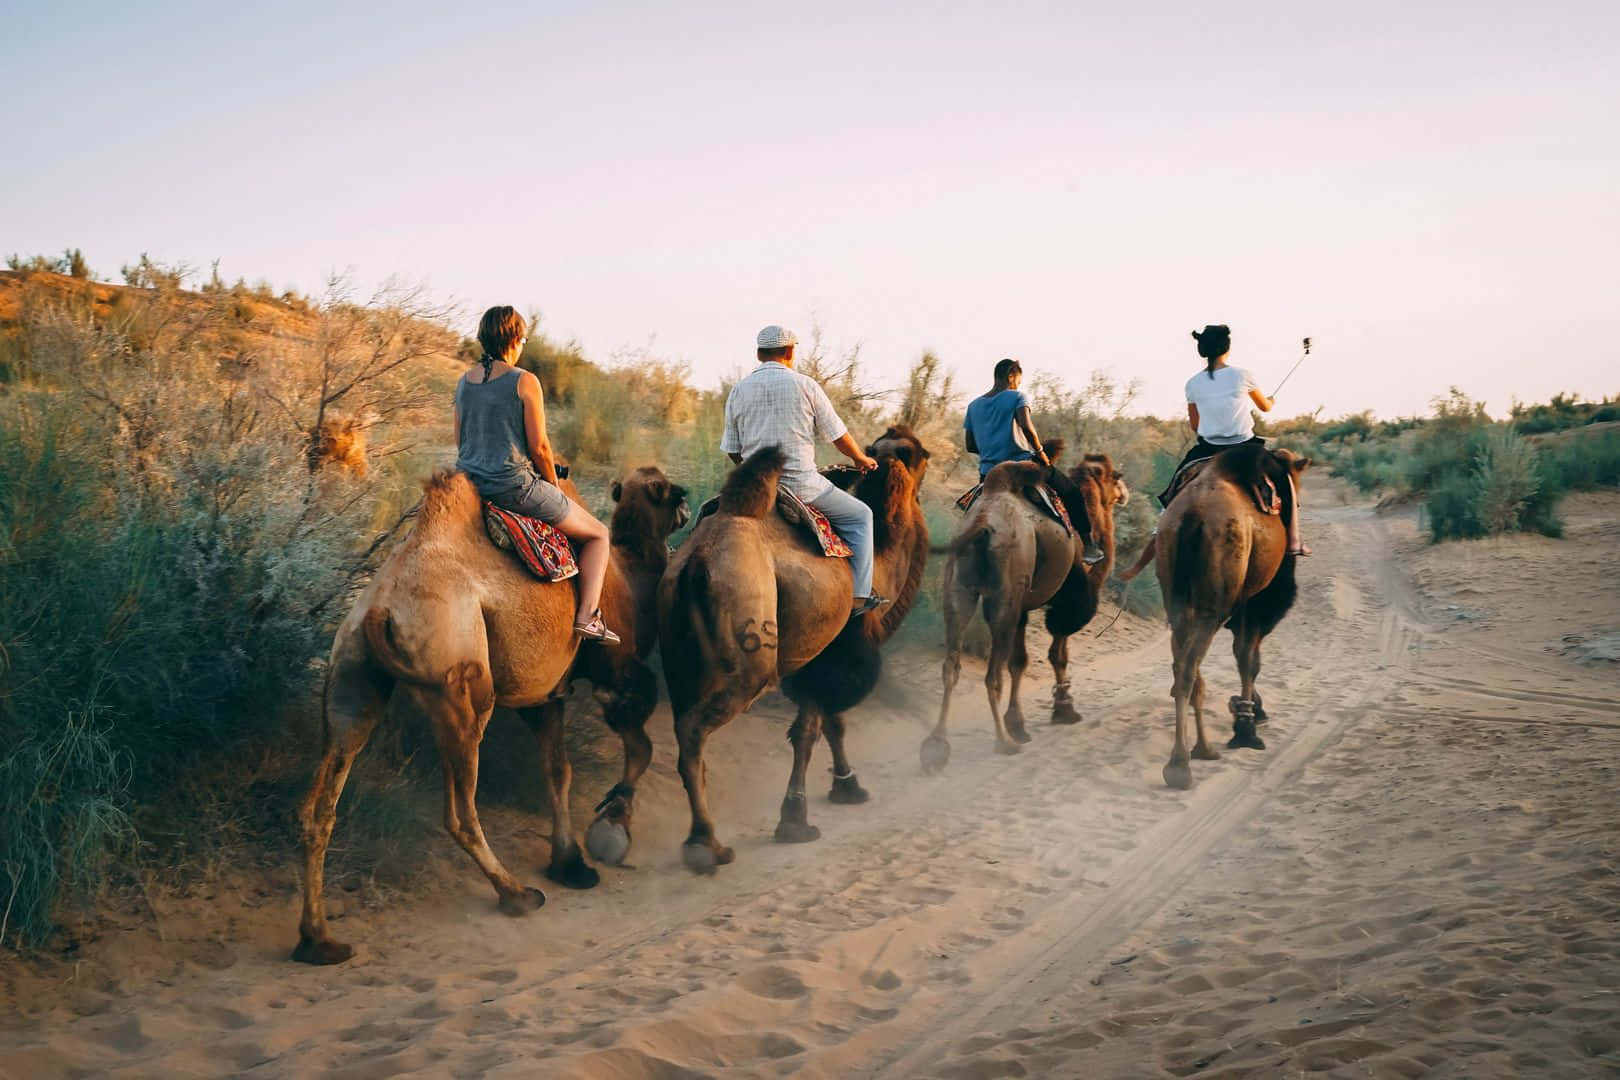 Ungrupo De Personas Montando Camellos En El Desierto.